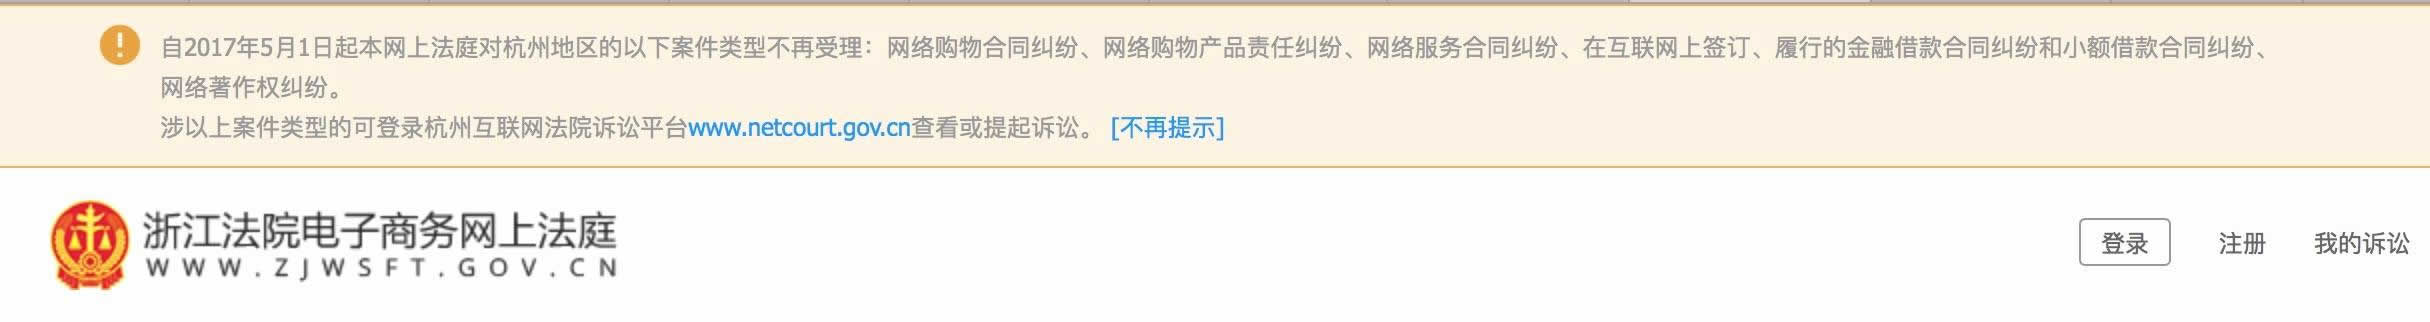 杭州互联网法院正式批准设立 互联网 微新闻 第1张